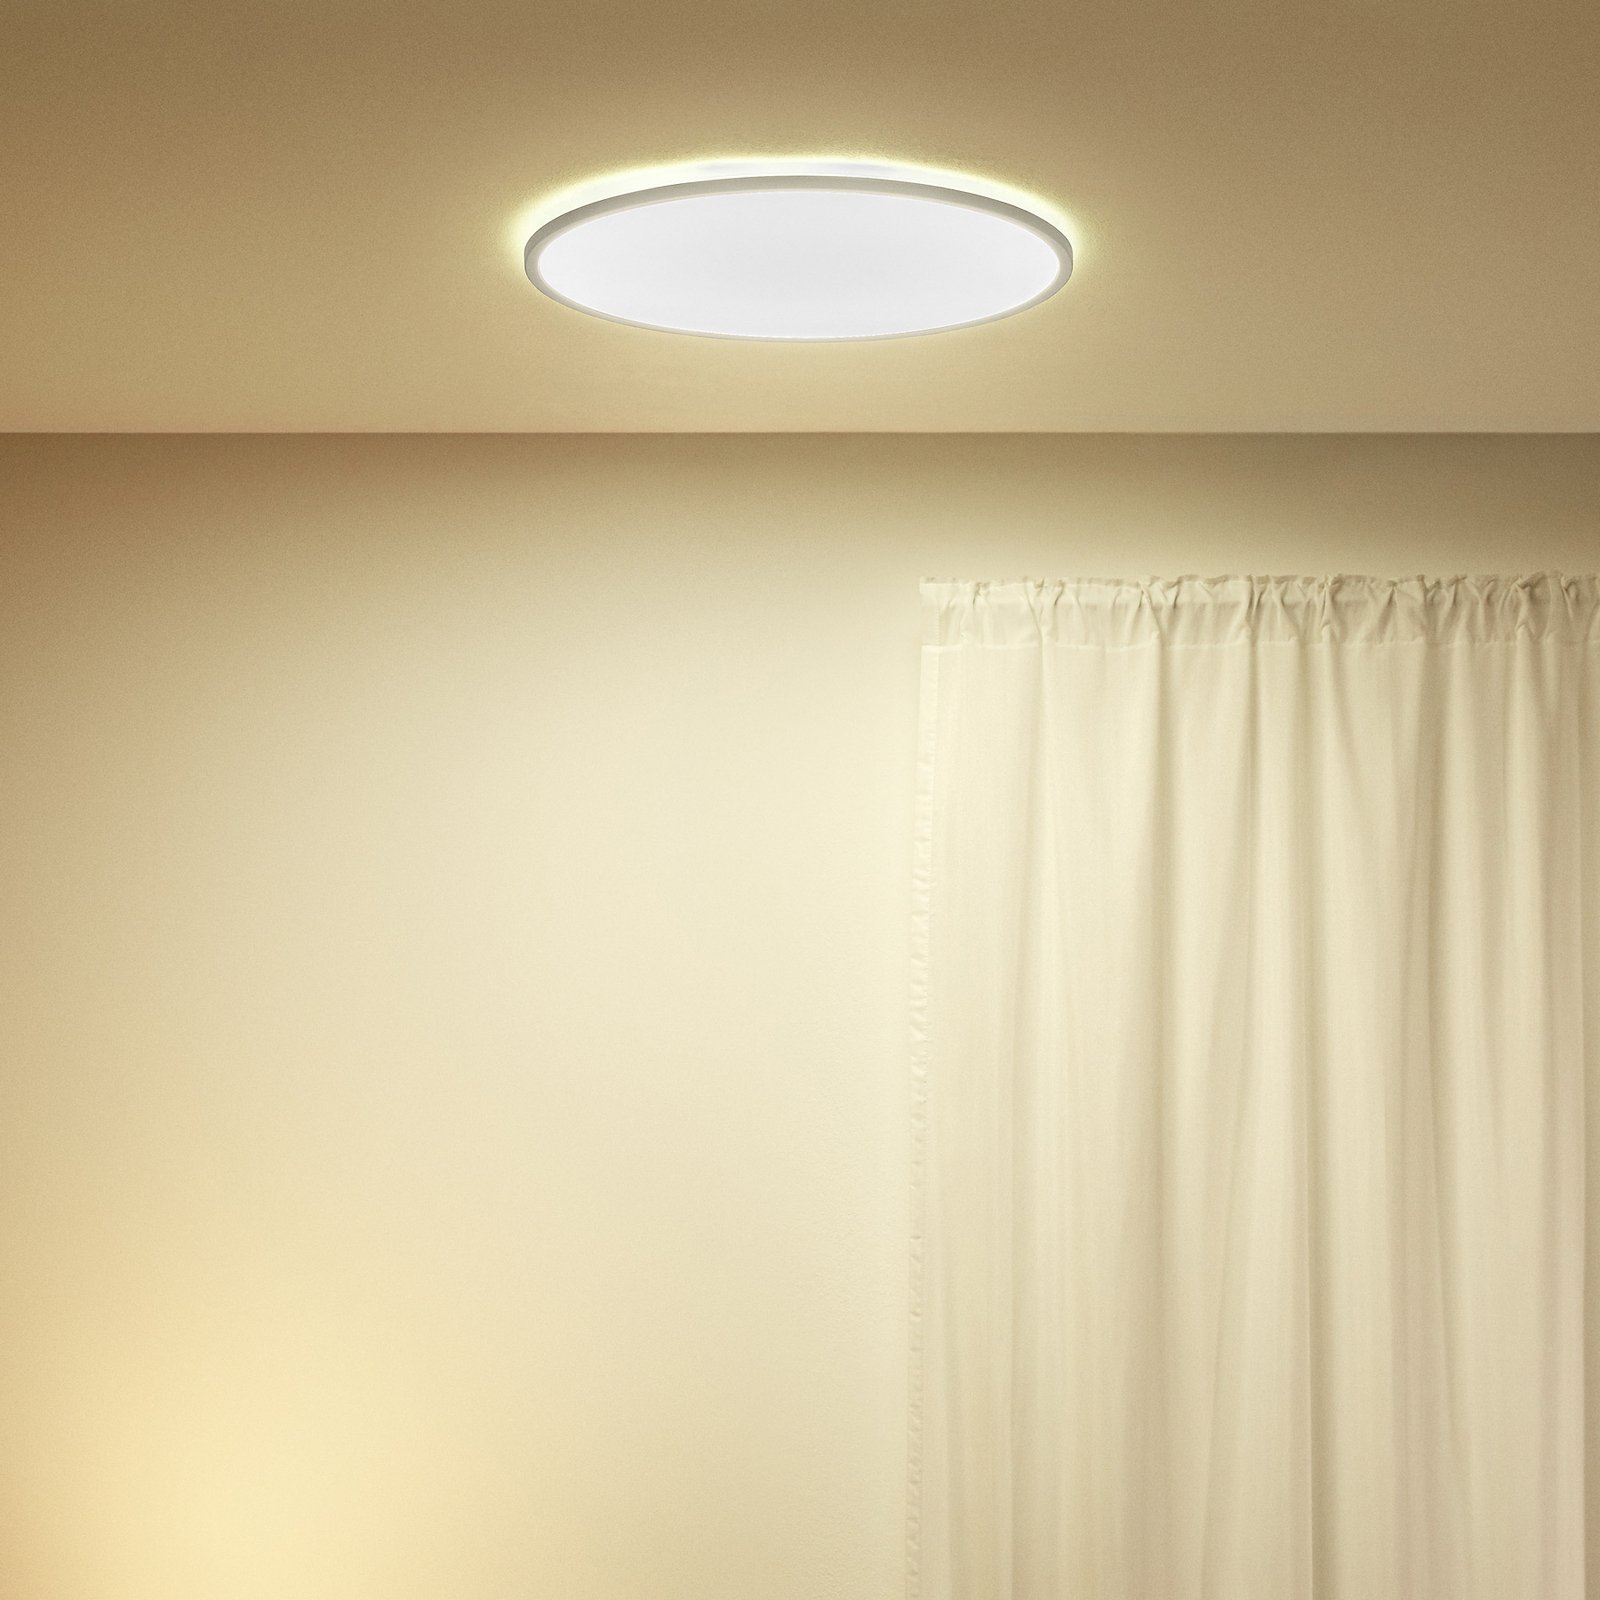 WiZ SuperSlim LED stropné svetlo CCT Ø55cm biele